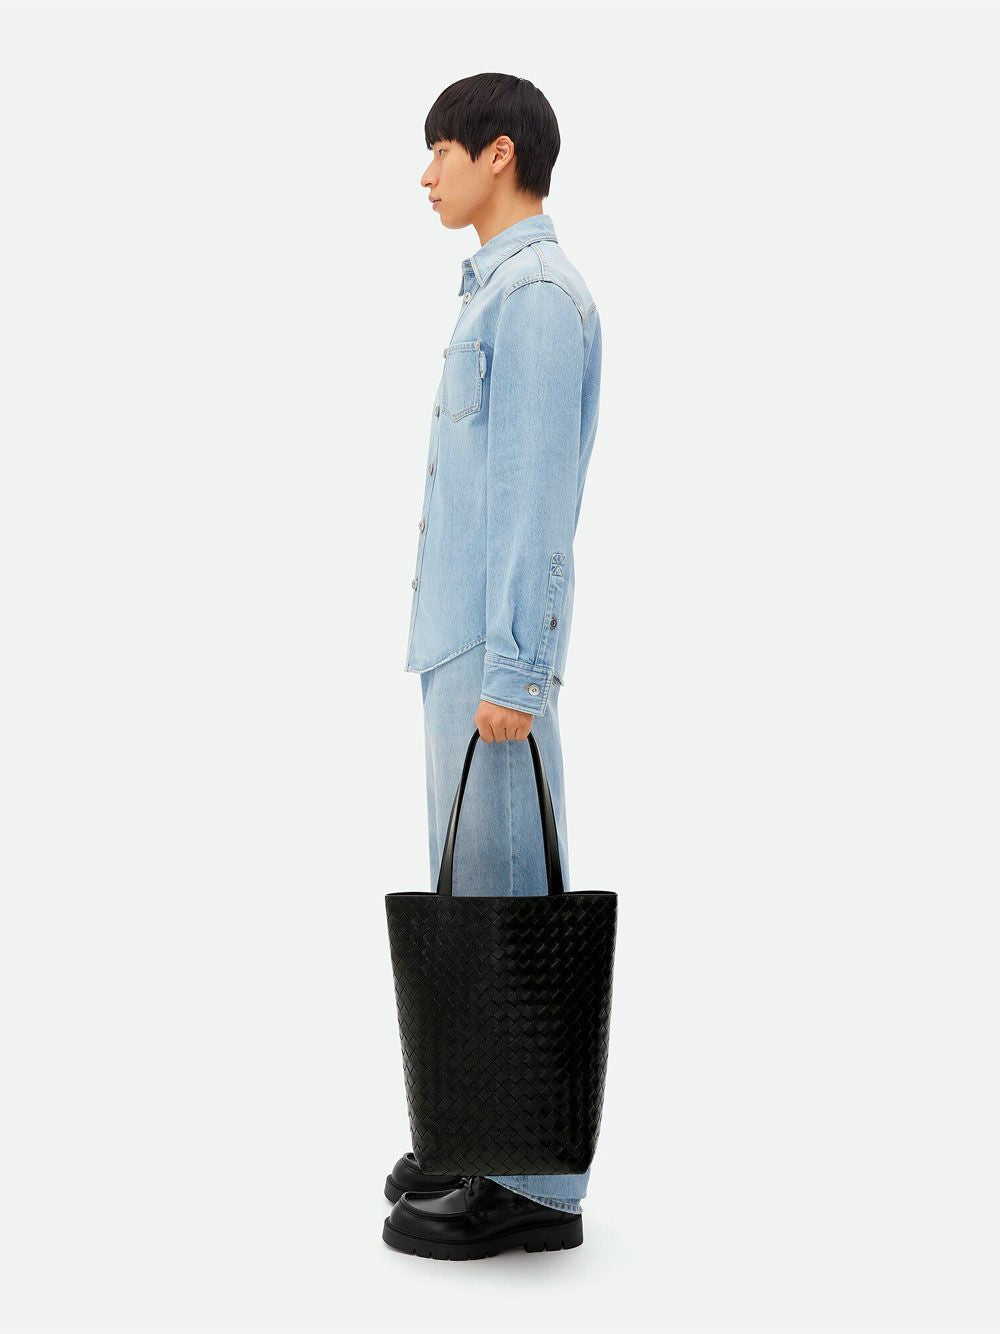 BOTTEGA VENETA Classic Intrecciato Tote Handbag for Men in Black